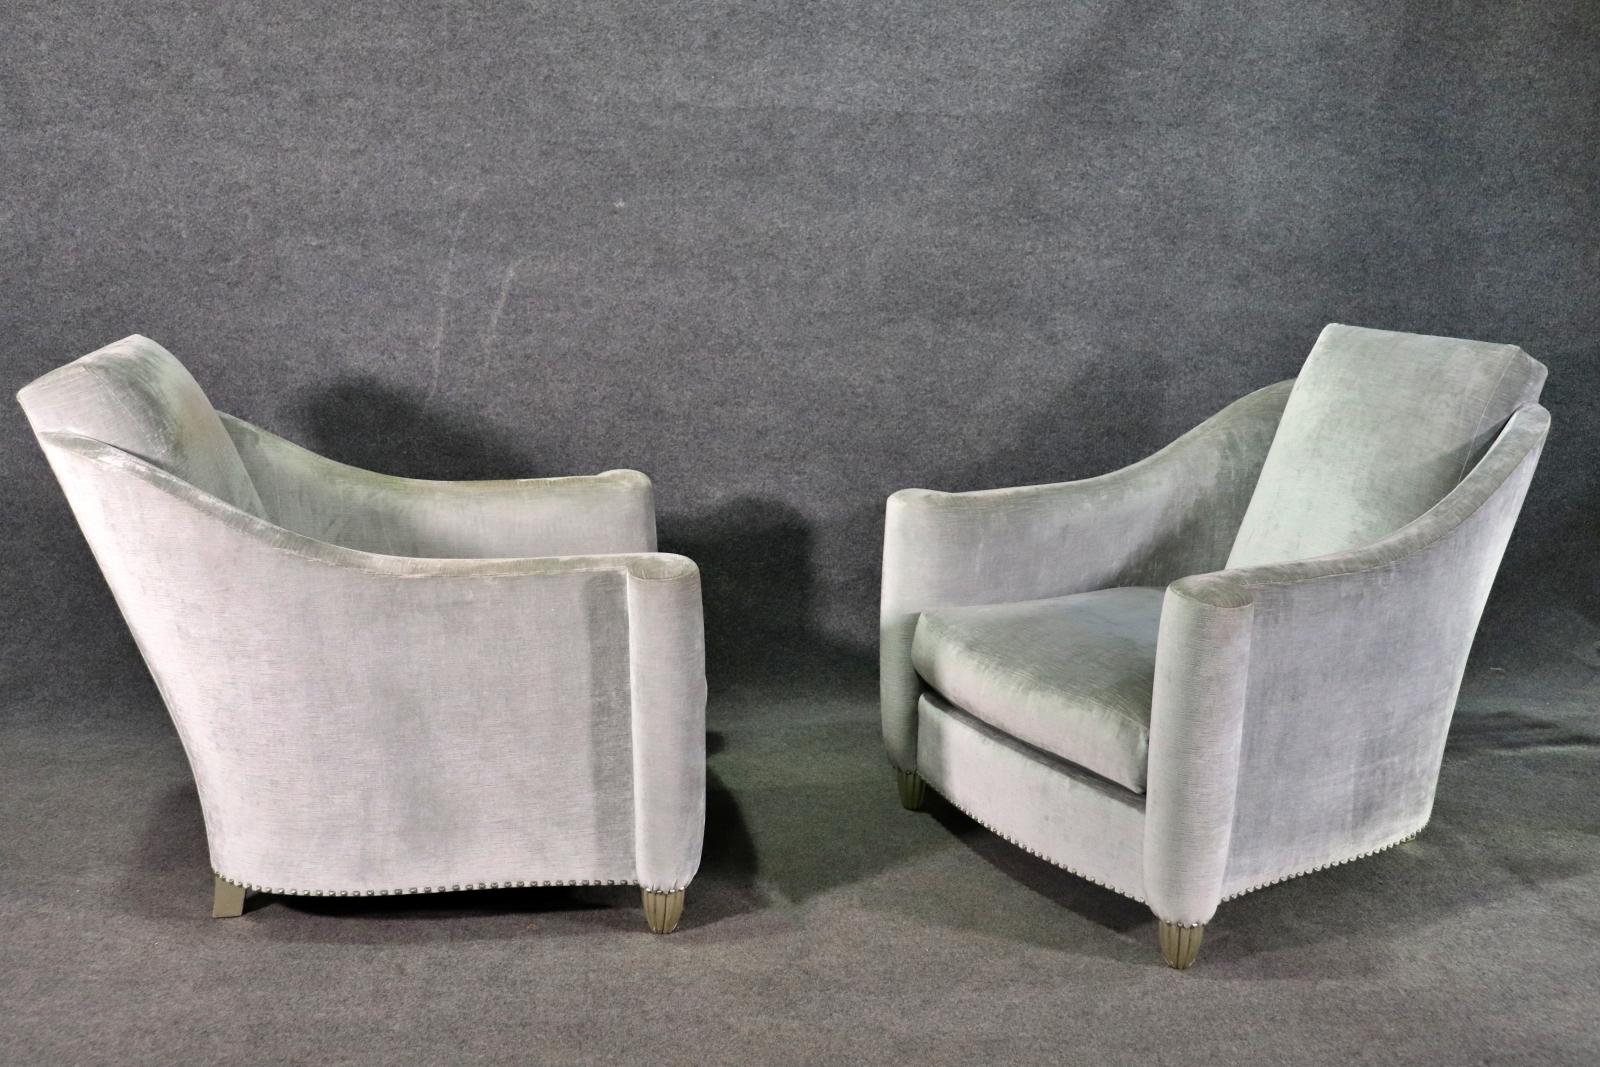 Zwei schöne Sessel im Deco-Stil aus grauem Samt. Lange, schräge Rückenlehne mit verschnörkelten Armen und Nagelkopfverzierung am Sockel.
Bitte bestätigen Sie den Standort NY oder NJ